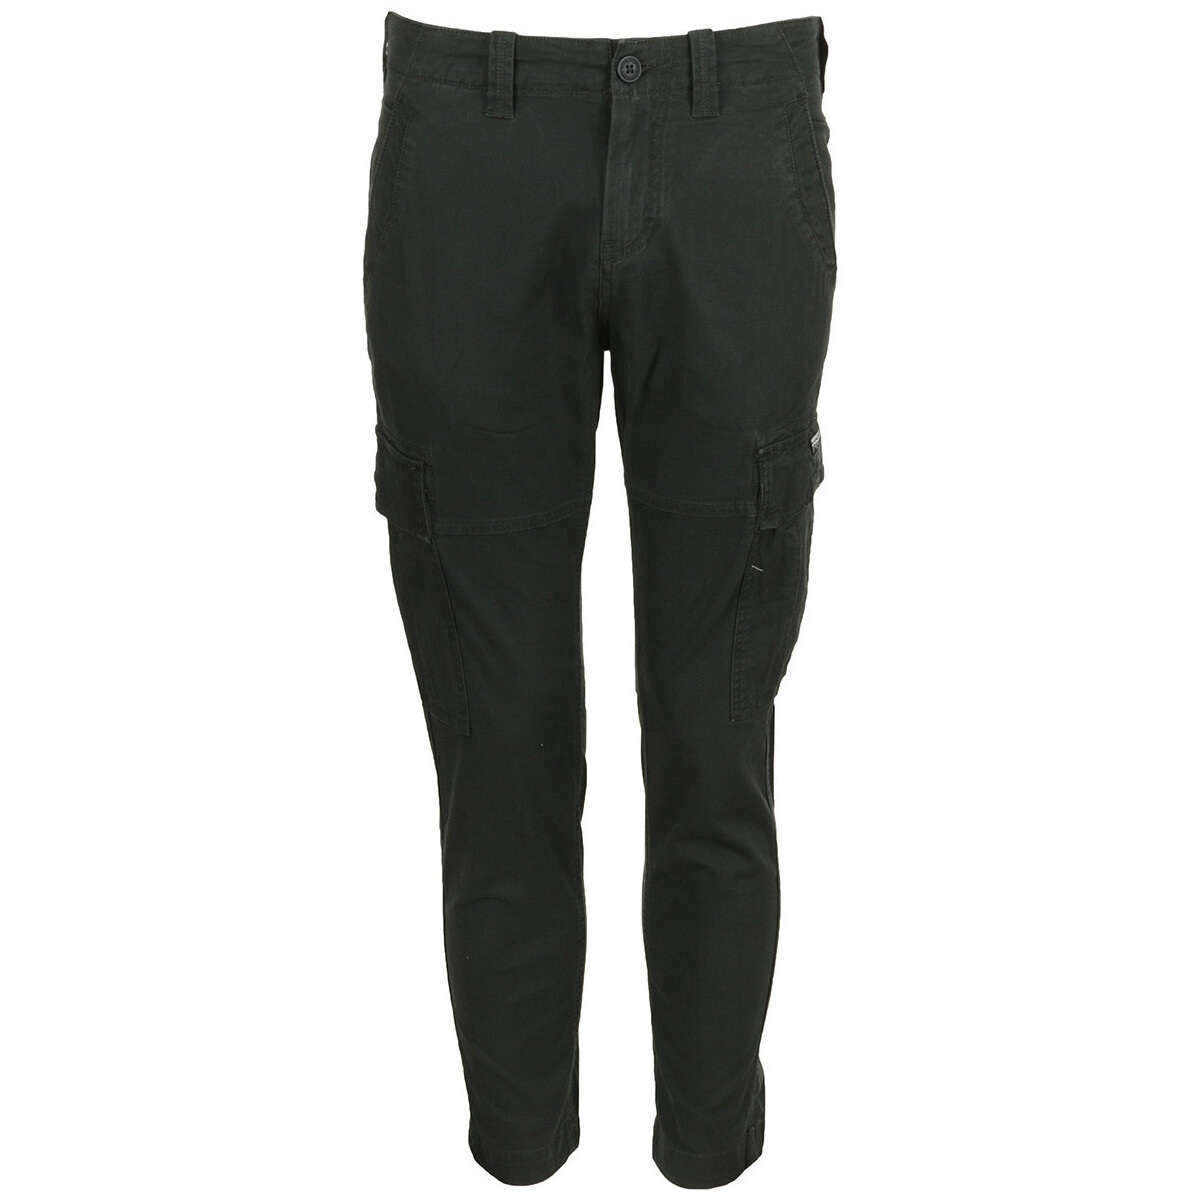 Abbigliamento Uomo Pantaloni 5 tasche Superdry Core Cargo Pant Nero